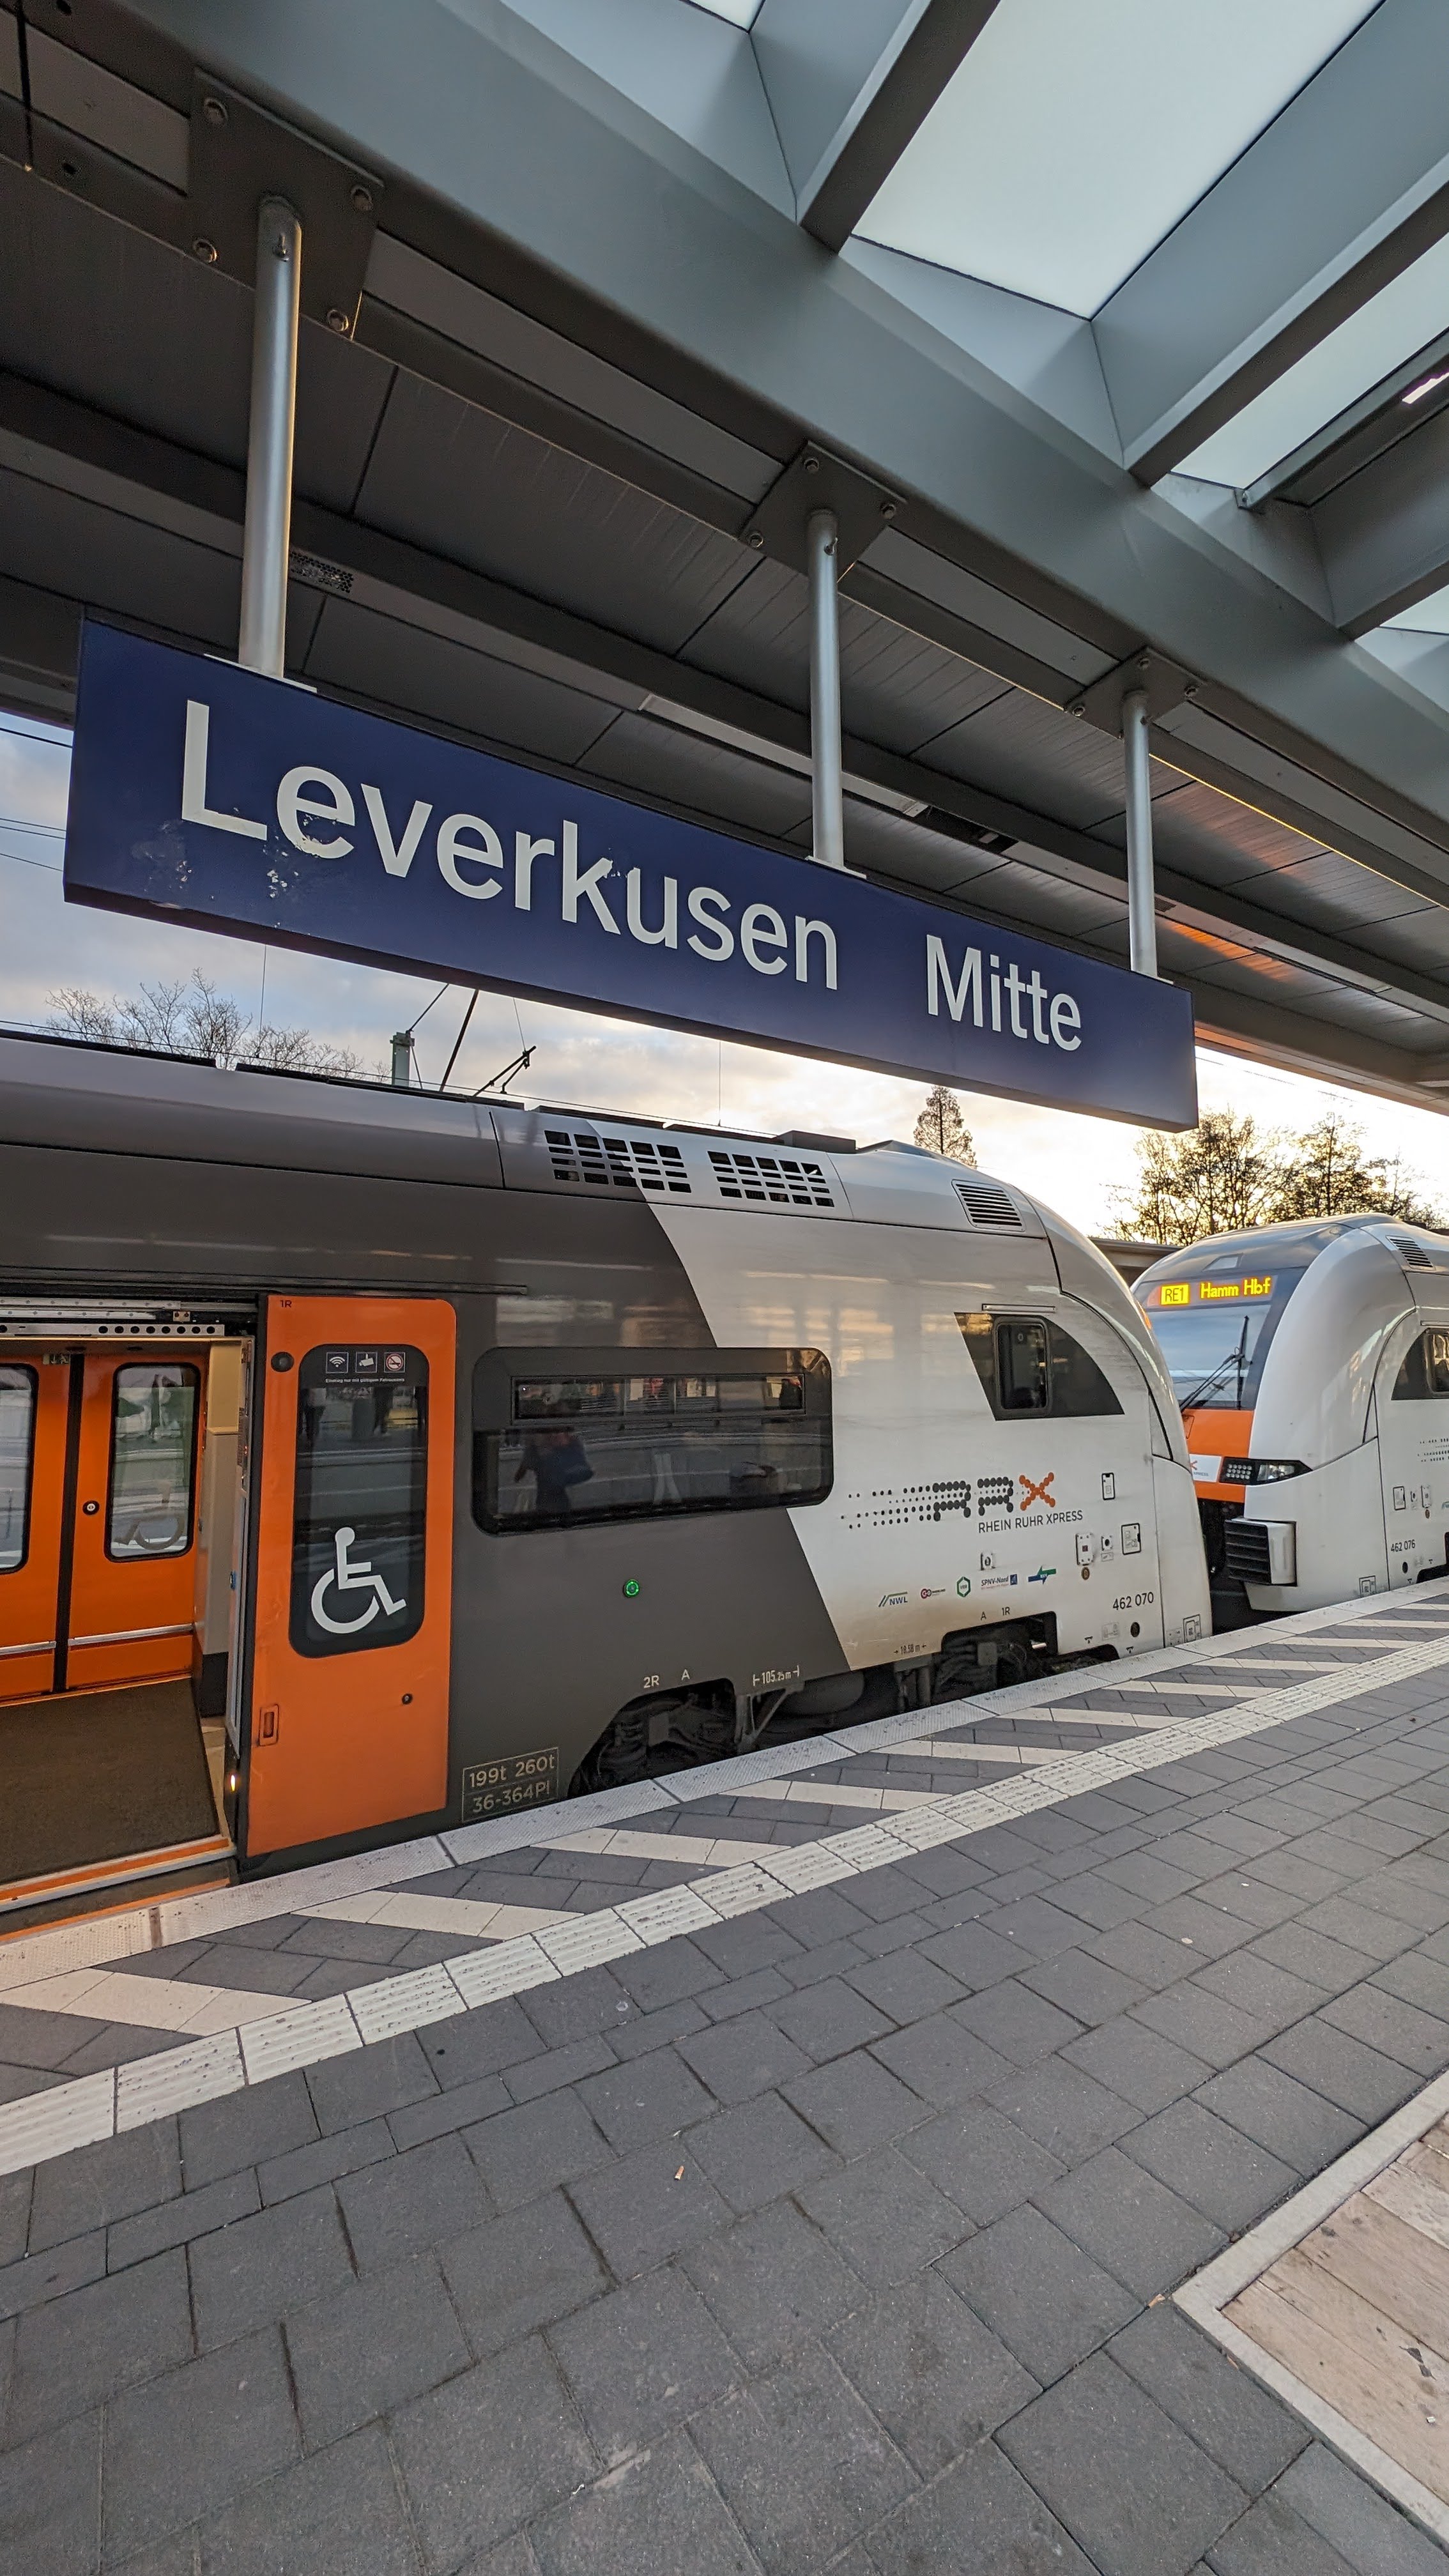 Ein RRX am Bahnsteig in Leverkusen Mitte. Davor ein Bahnhofsschild mit der Aufschrift "Leverkusen Mitte".